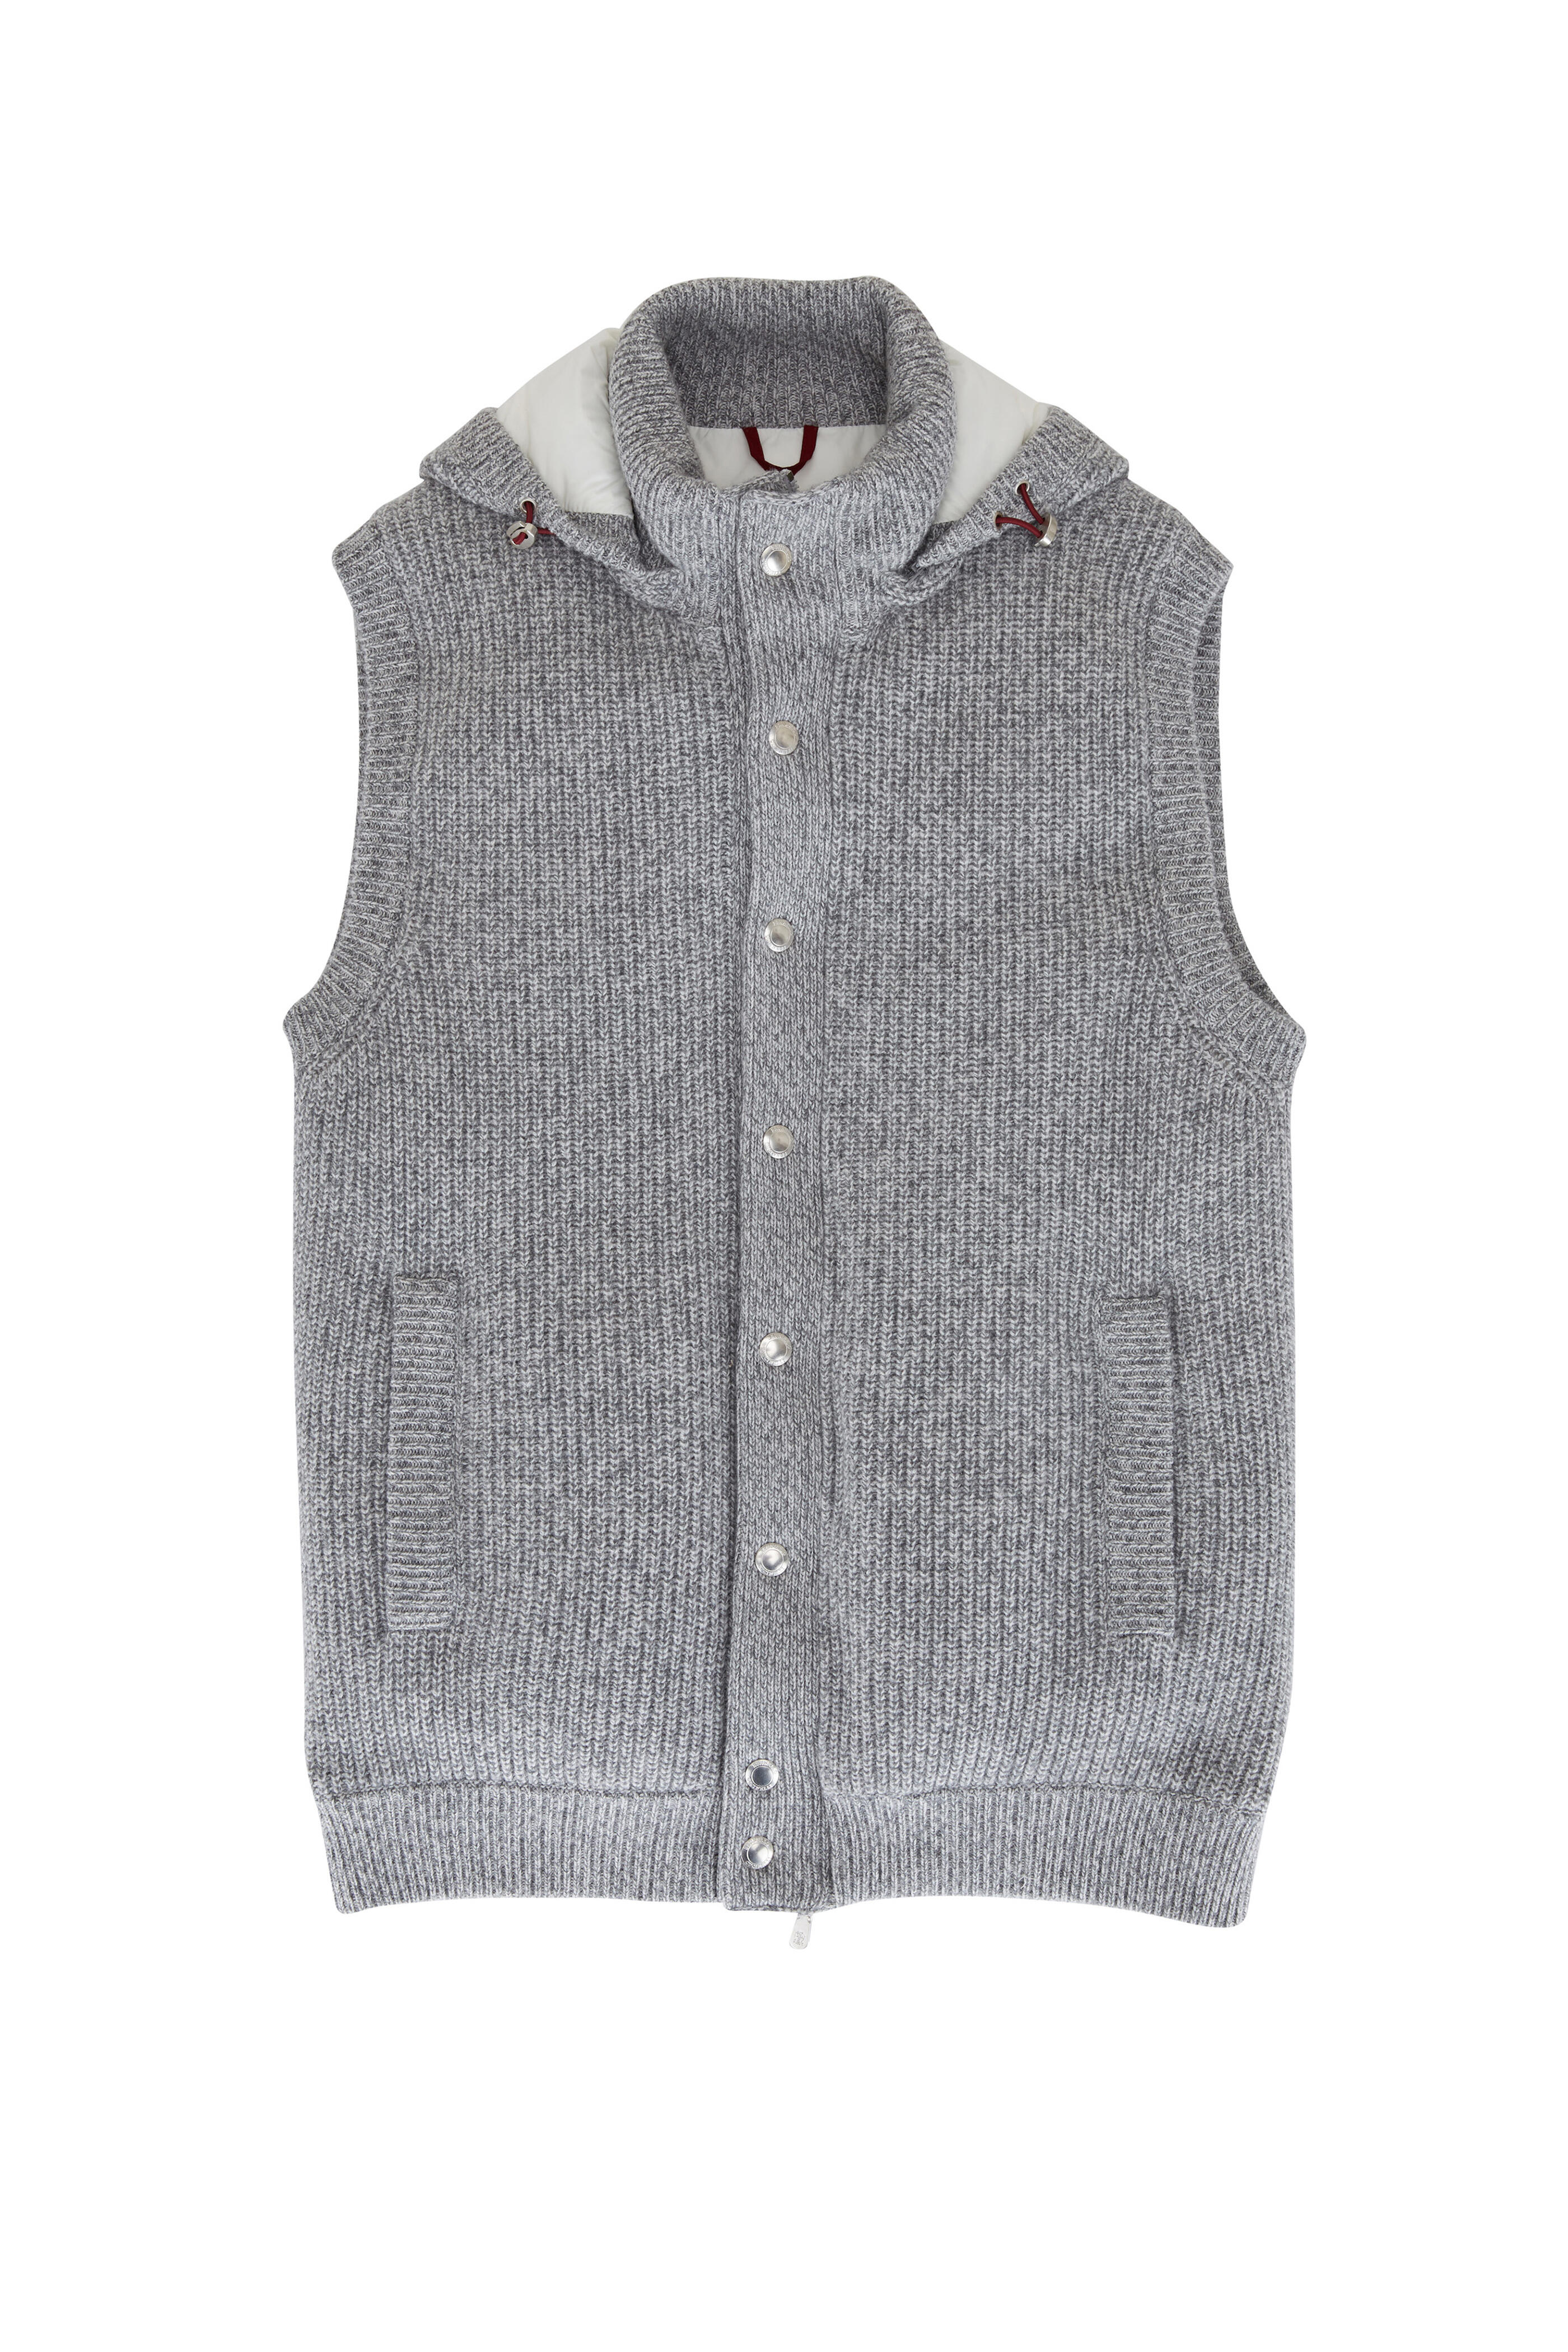 Brunello Cucinelli - Gray Cashmere Knit Puffer Vest